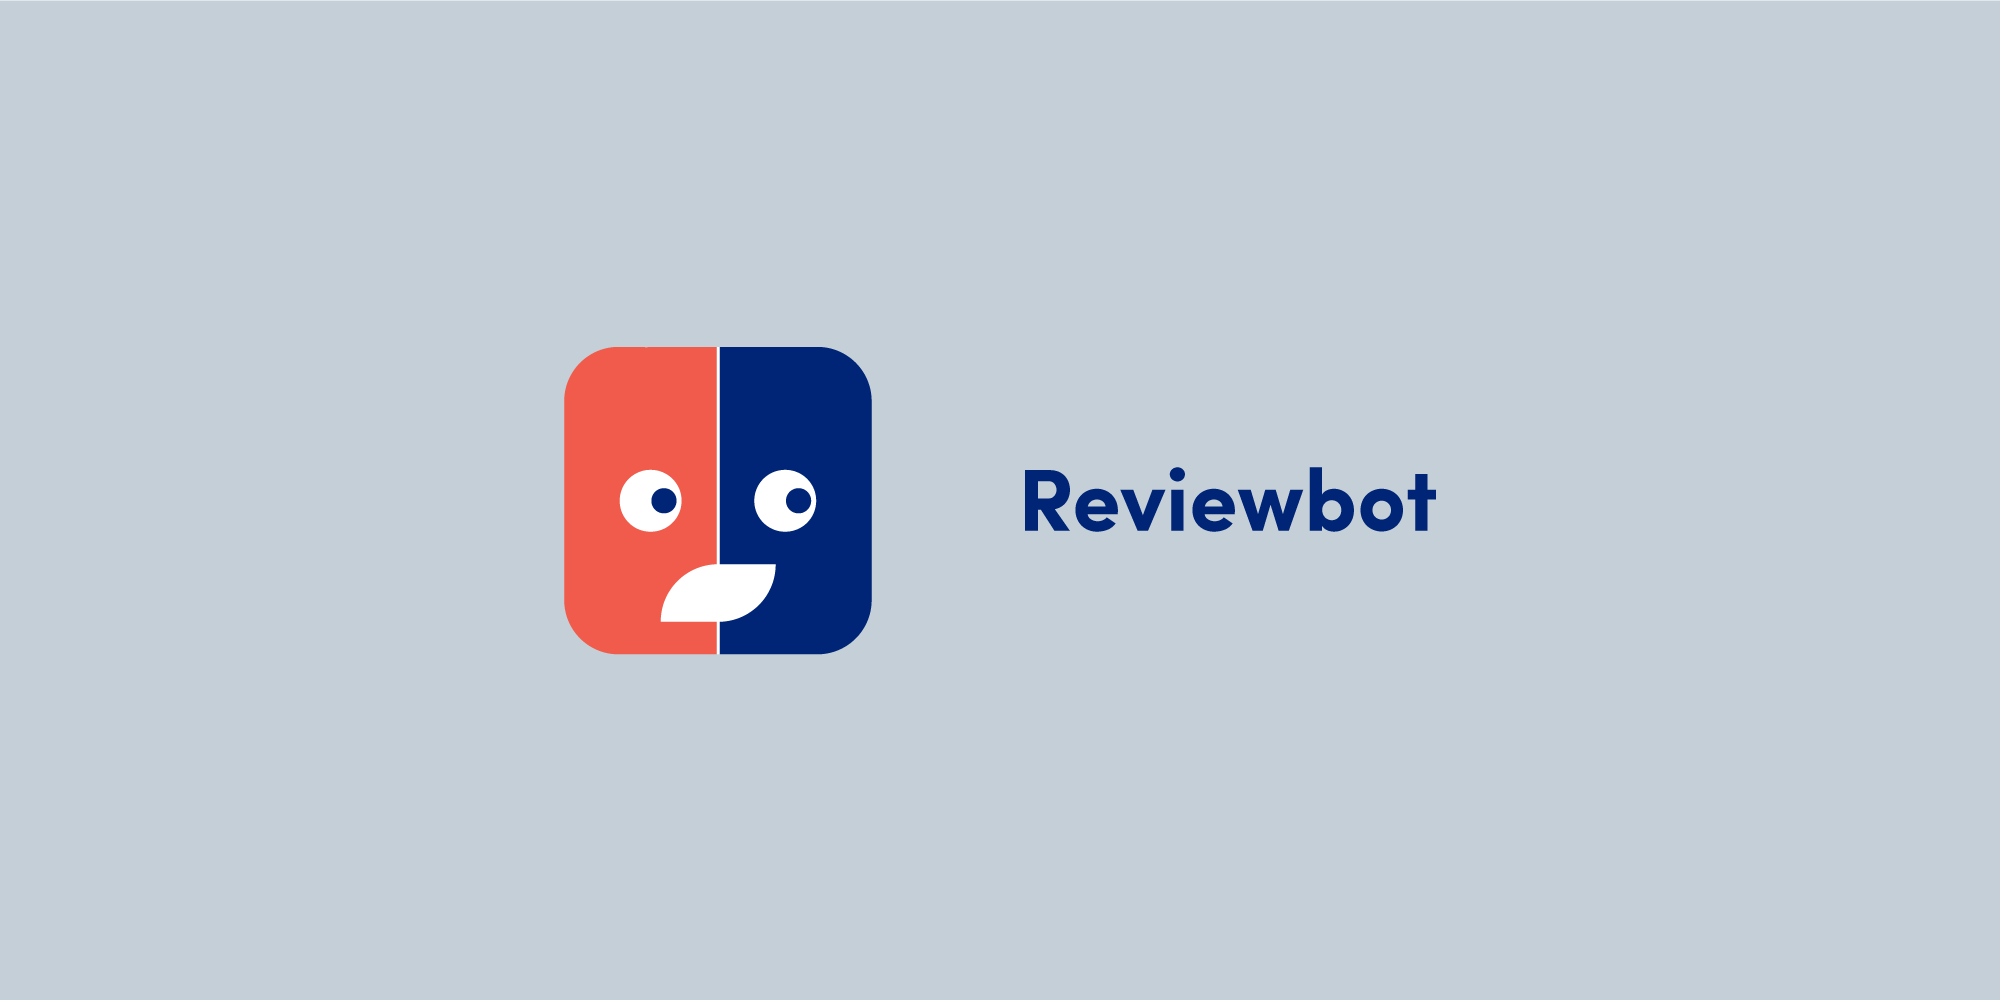 Reviewbot logo